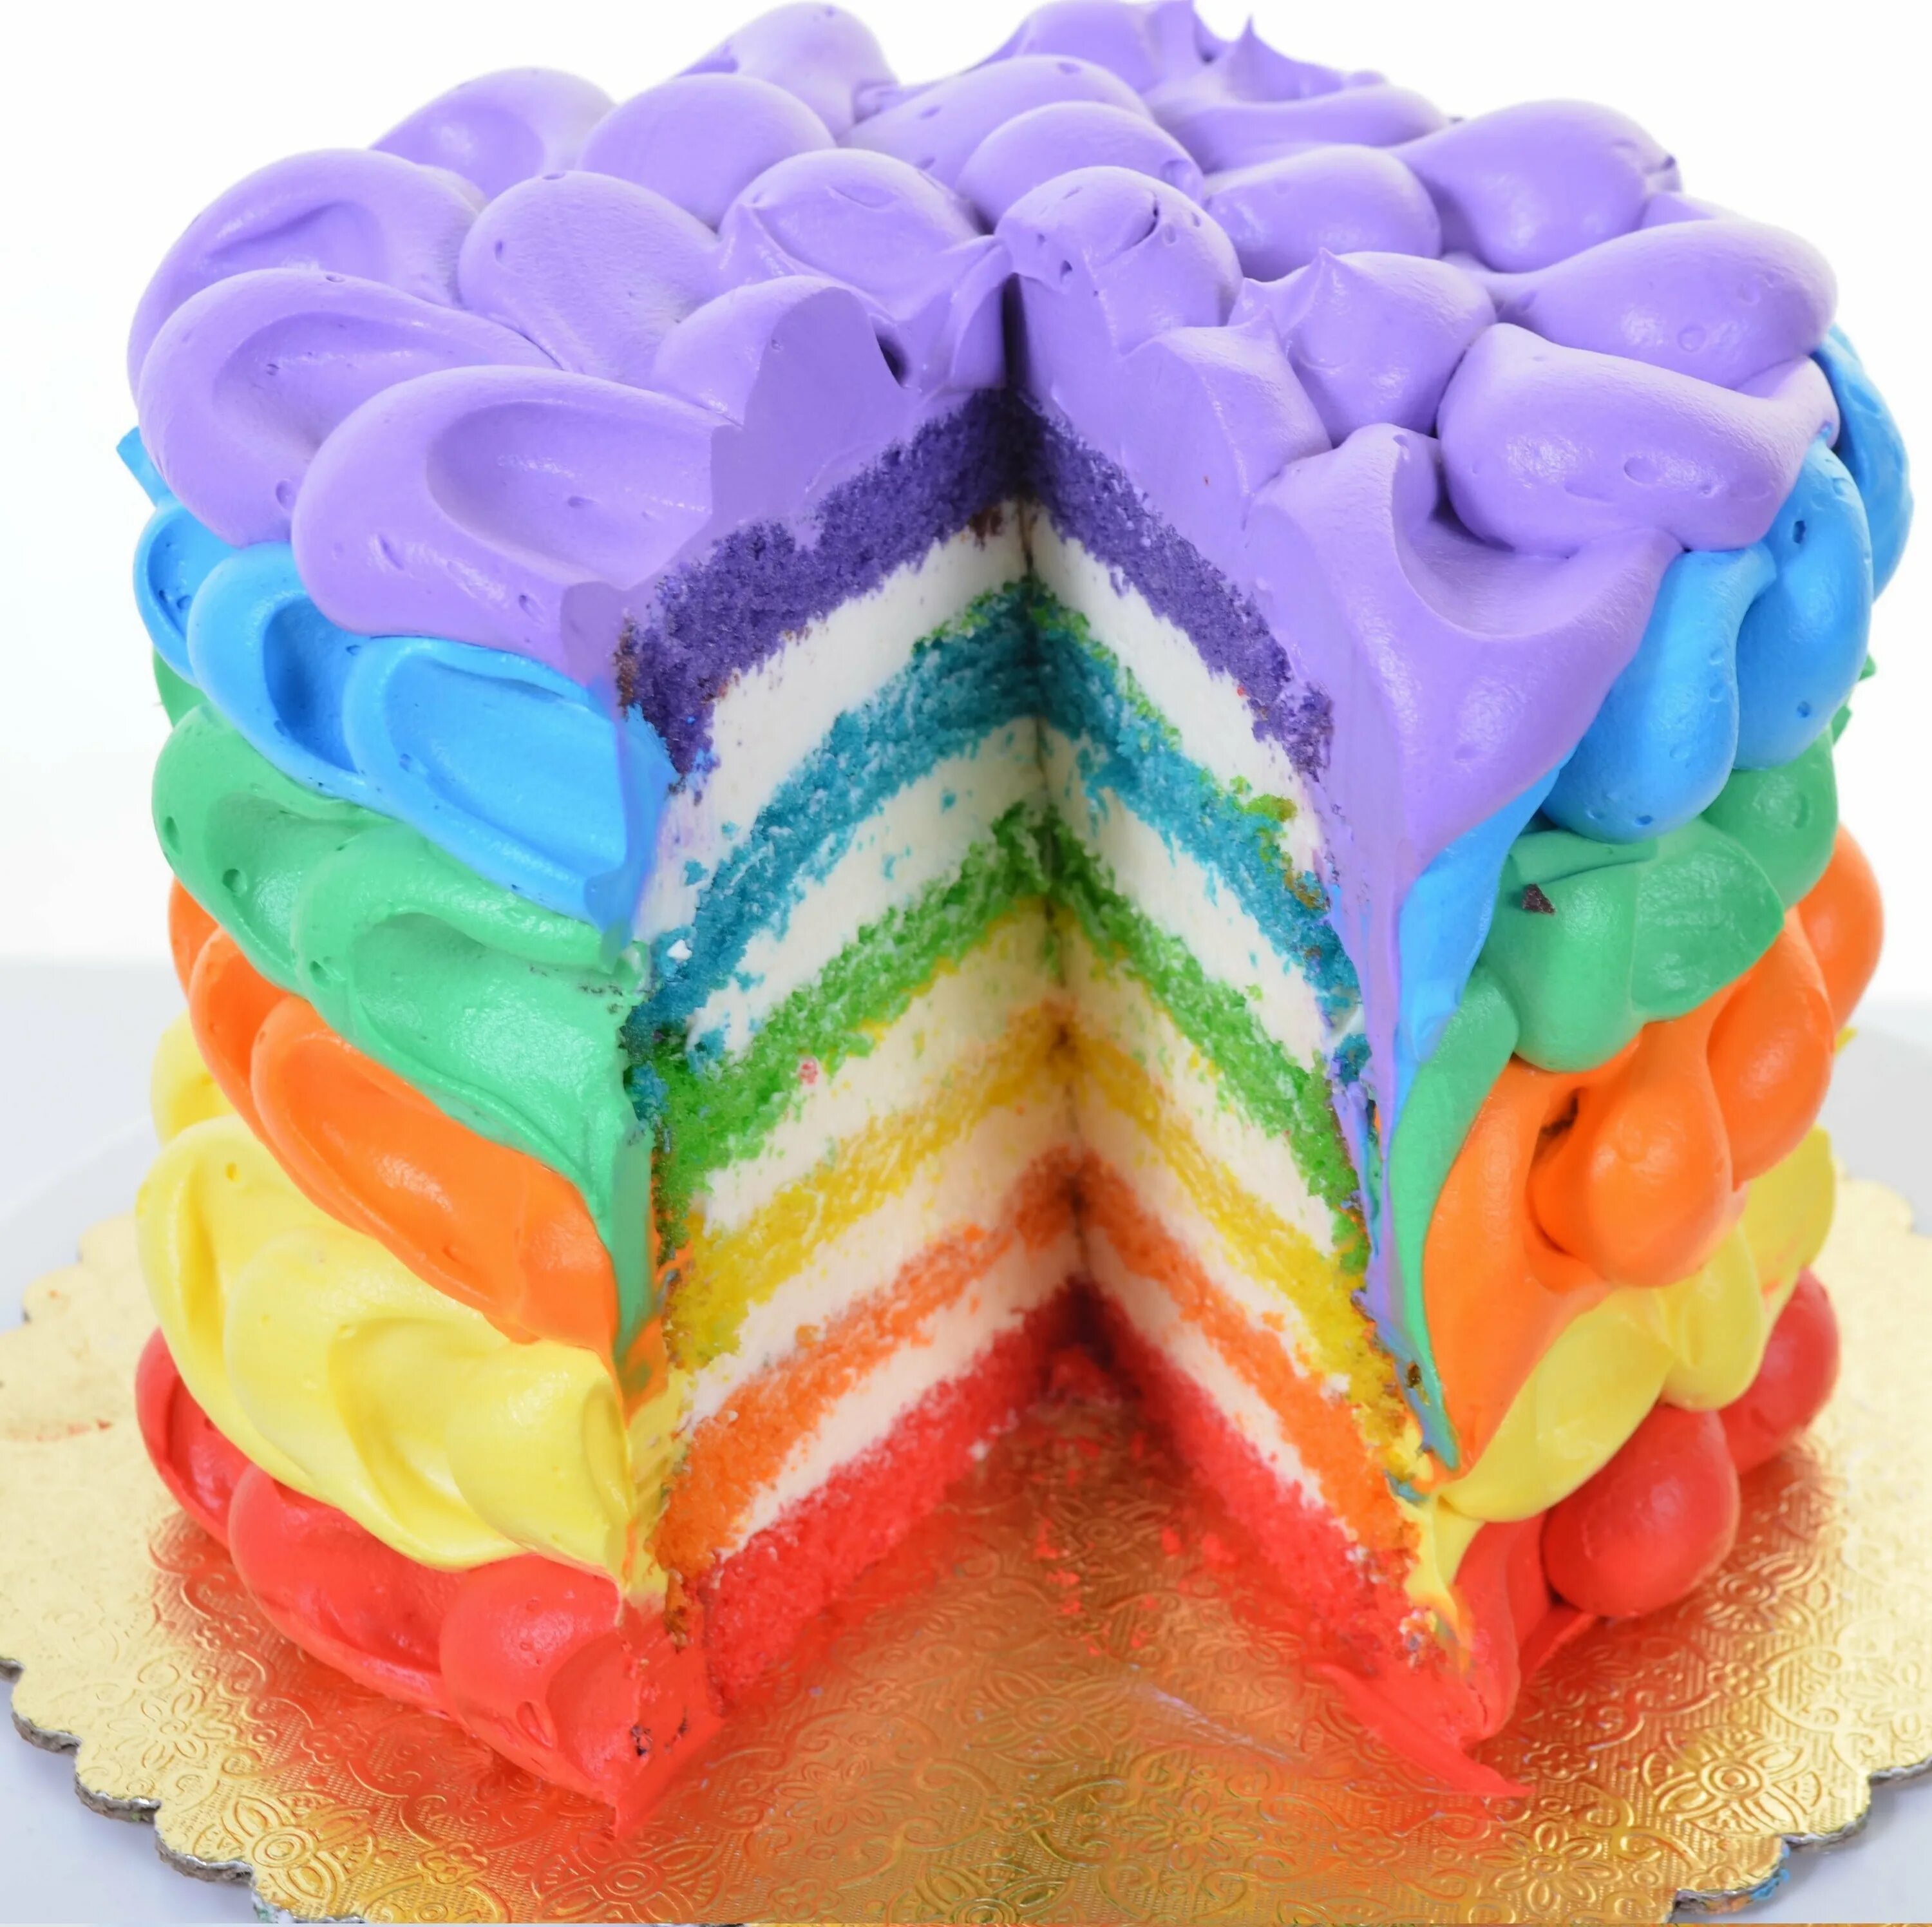 Цветное день рождения. Радужный торт с кремом чиз. Рейнбоу кейк. Торт Радуга с кремом чиз. Яркий детский торт.